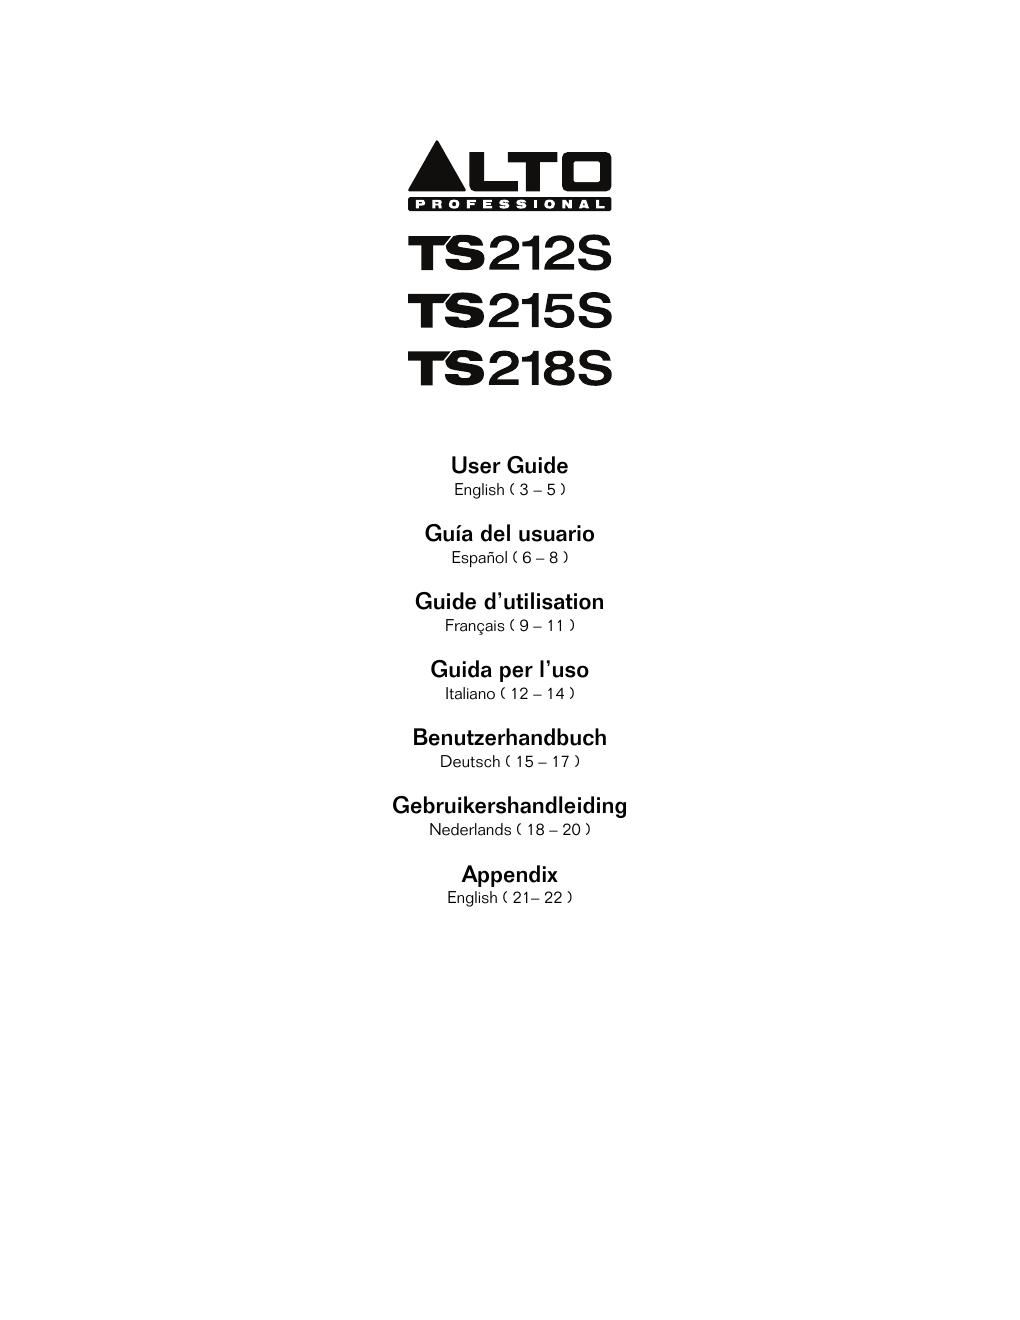 alto ts 212s user guide